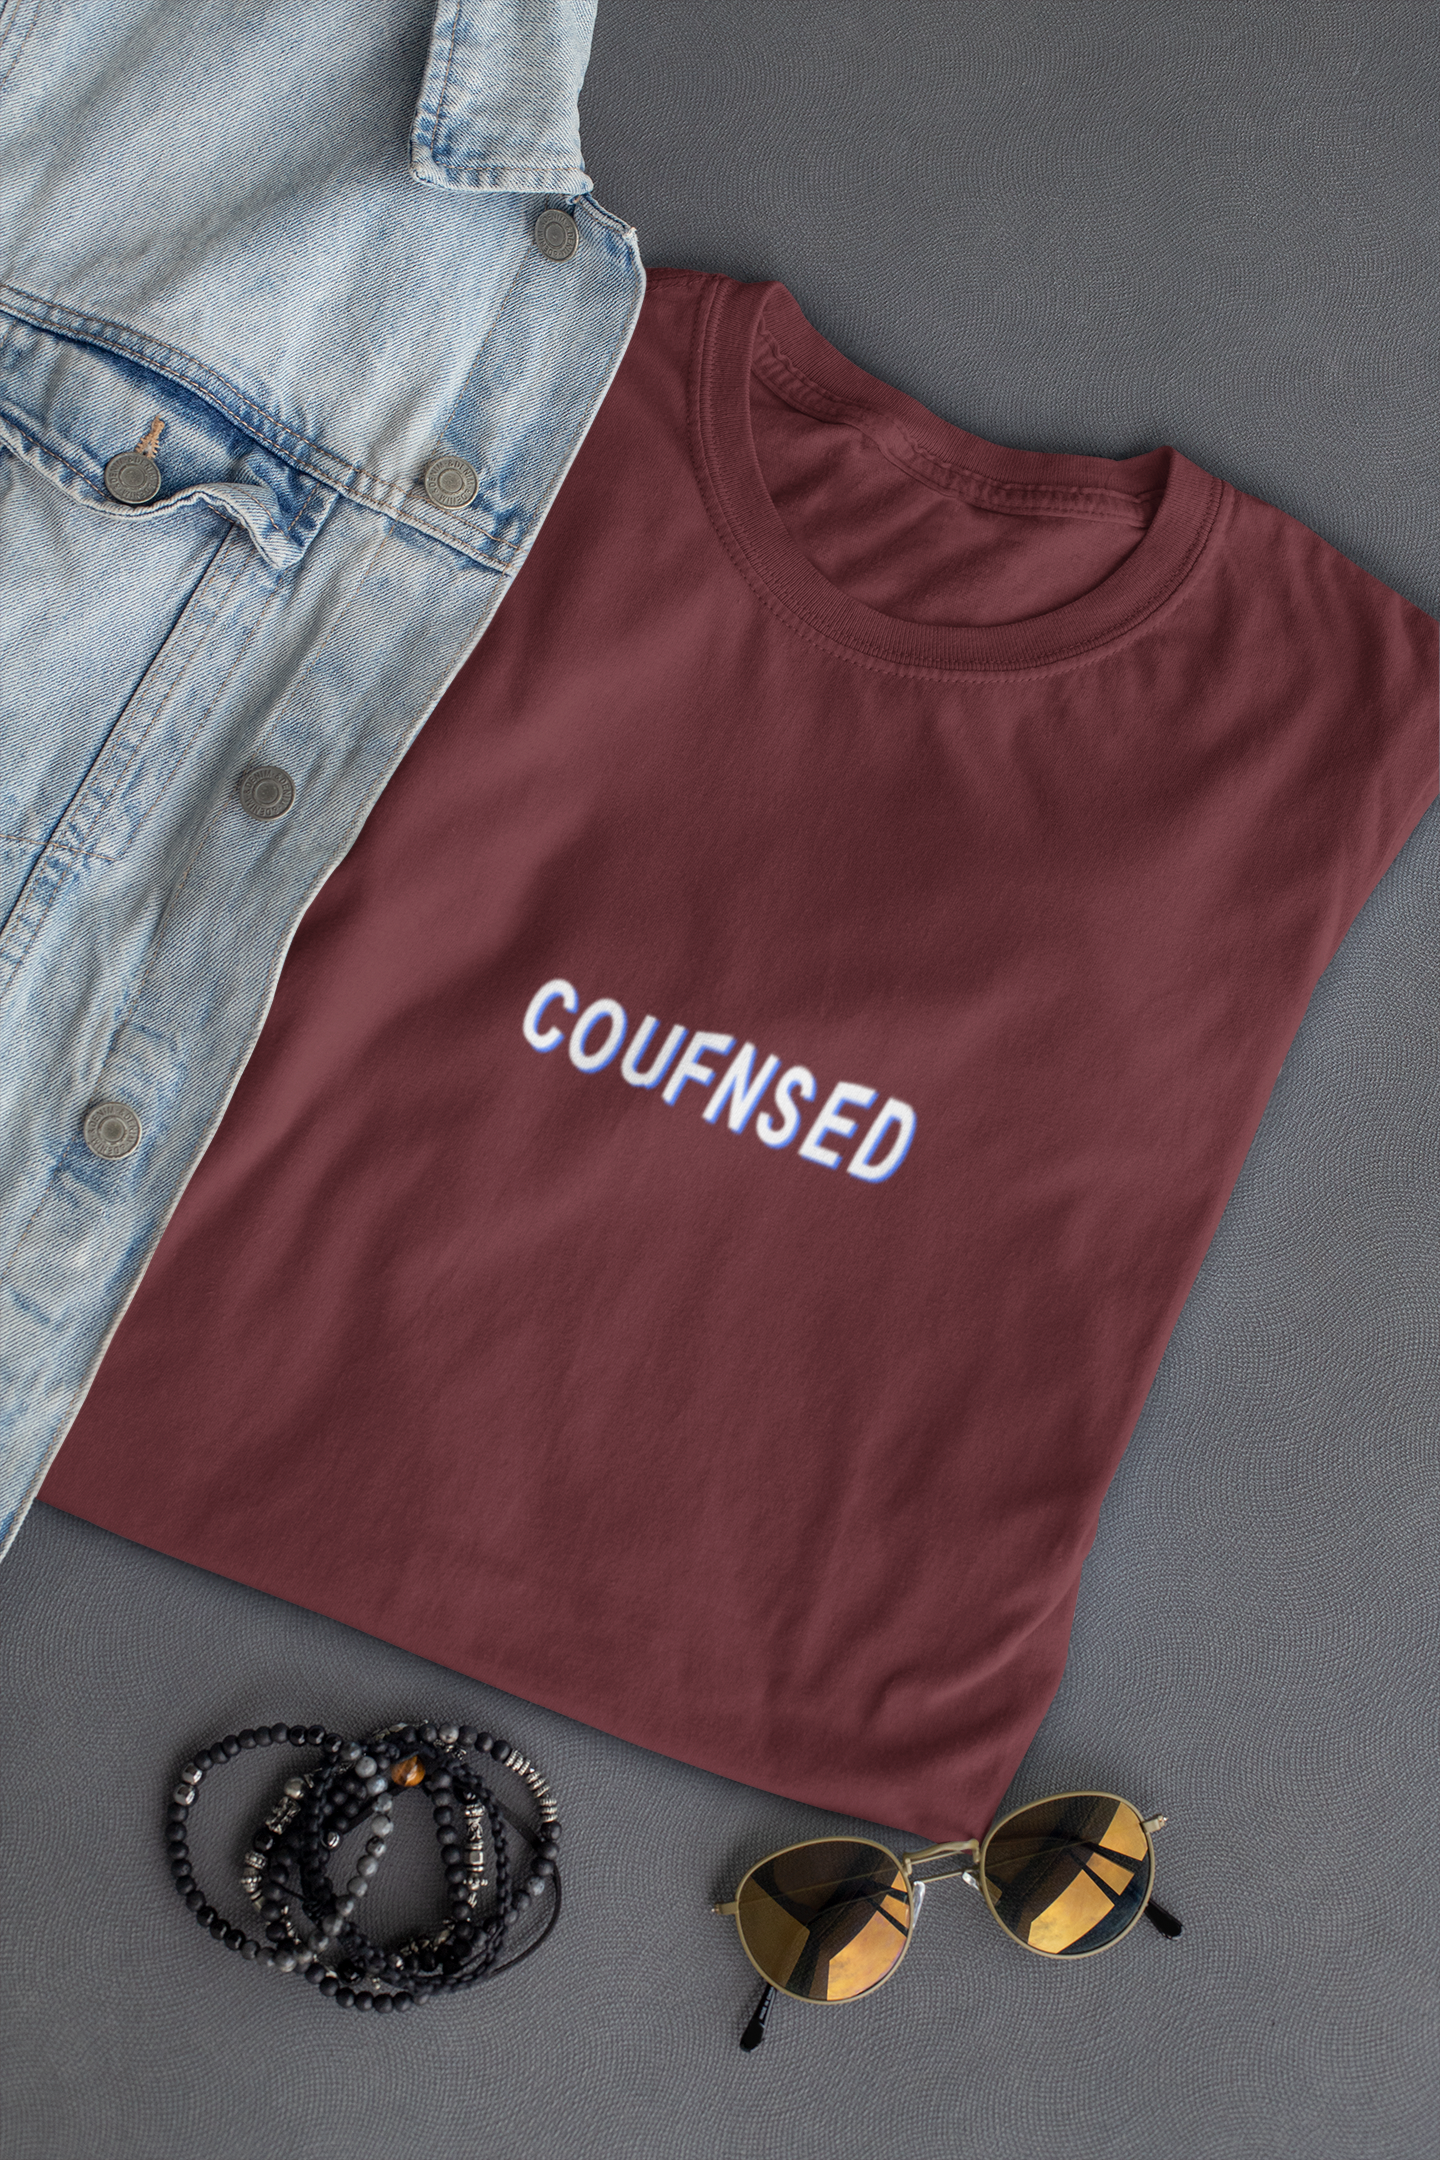 Confused Minimal Women Half Sleeves T-shirt- FunkyTeesClub